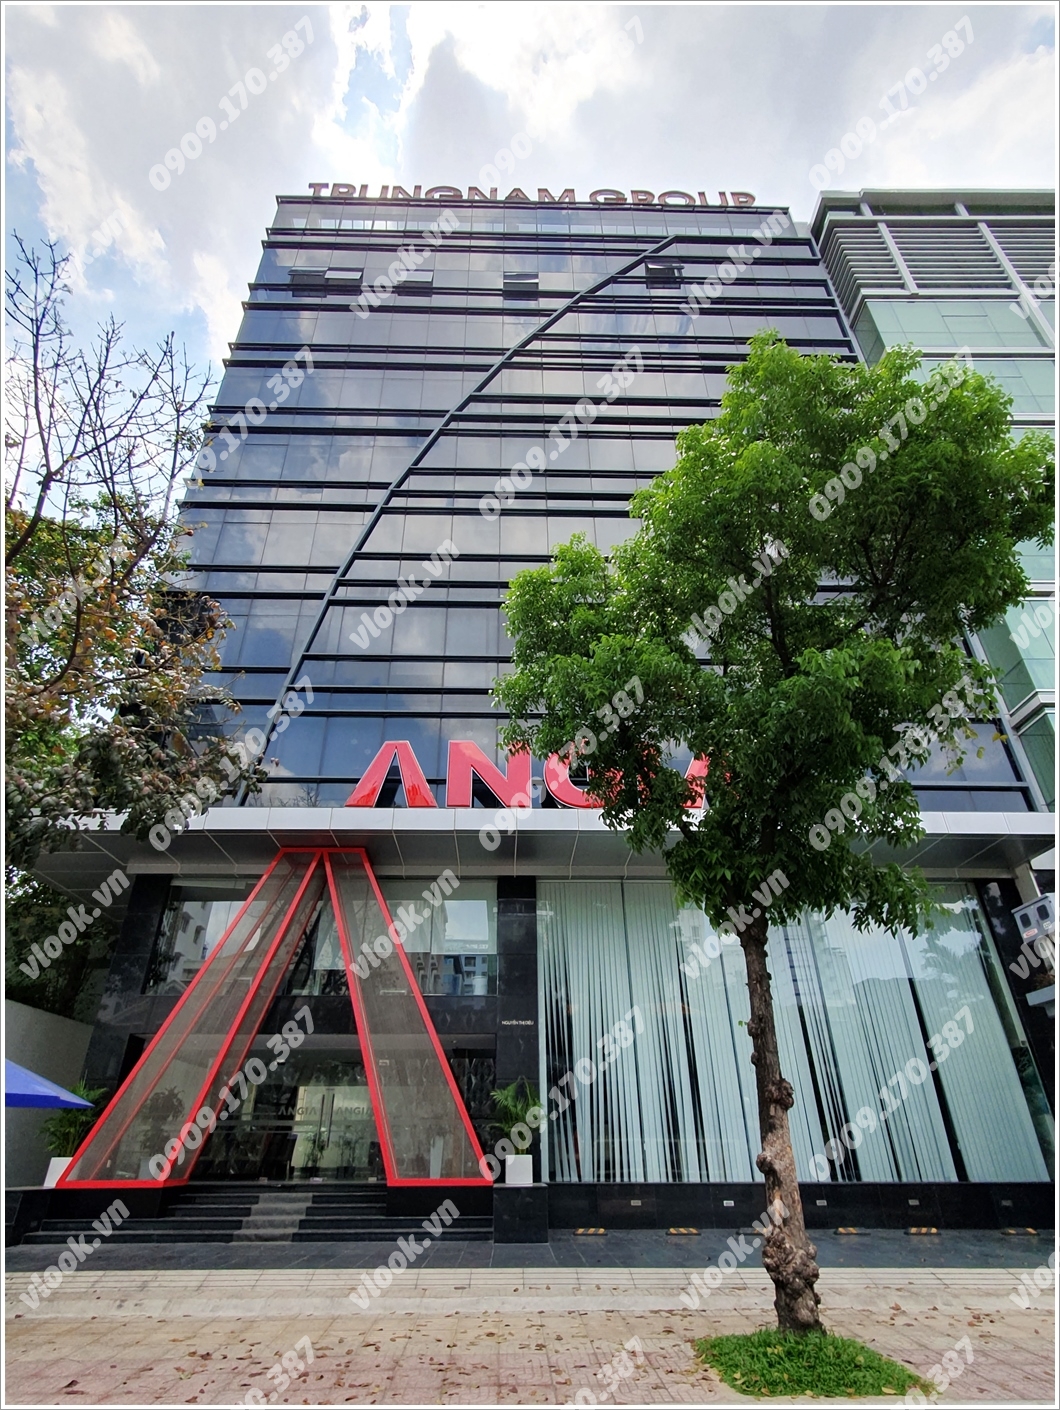 Mặt trước cao ốc cho thuê văn phòng Trung Nam Building 2, Nguyễn Thị Diệu, Quận 3, TPHCM - vlook.vn